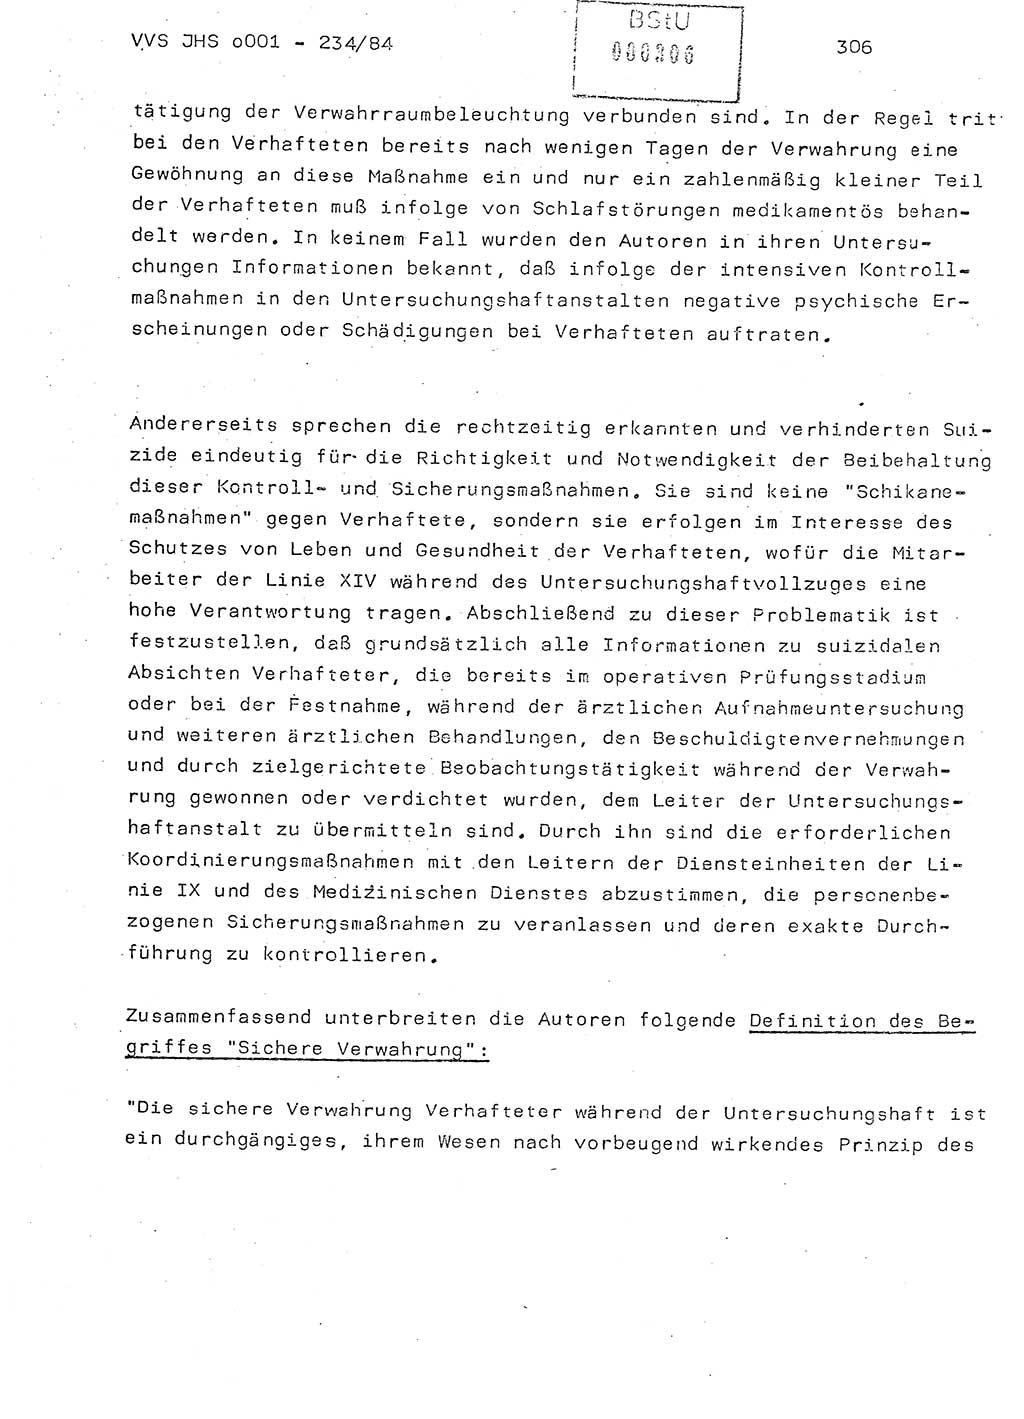 Dissertation Oberst Siegfried Rataizick (Abt. ⅩⅣ), Oberstleutnant Volkmar Heinz (Abt. ⅩⅣ), Oberstleutnant Werner Stein (HA Ⅸ), Hauptmann Heinz Conrad (JHS), Ministerium für Staatssicherheit (MfS) [Deutsche Demokratische Republik (DDR)], Juristische Hochschule (JHS), Vertrauliche Verschlußsache (VVS) o001-234/84, Potsdam 1984, Seite 306 (Diss. MfS DDR JHS VVS o001-234/84 1984, S. 306)